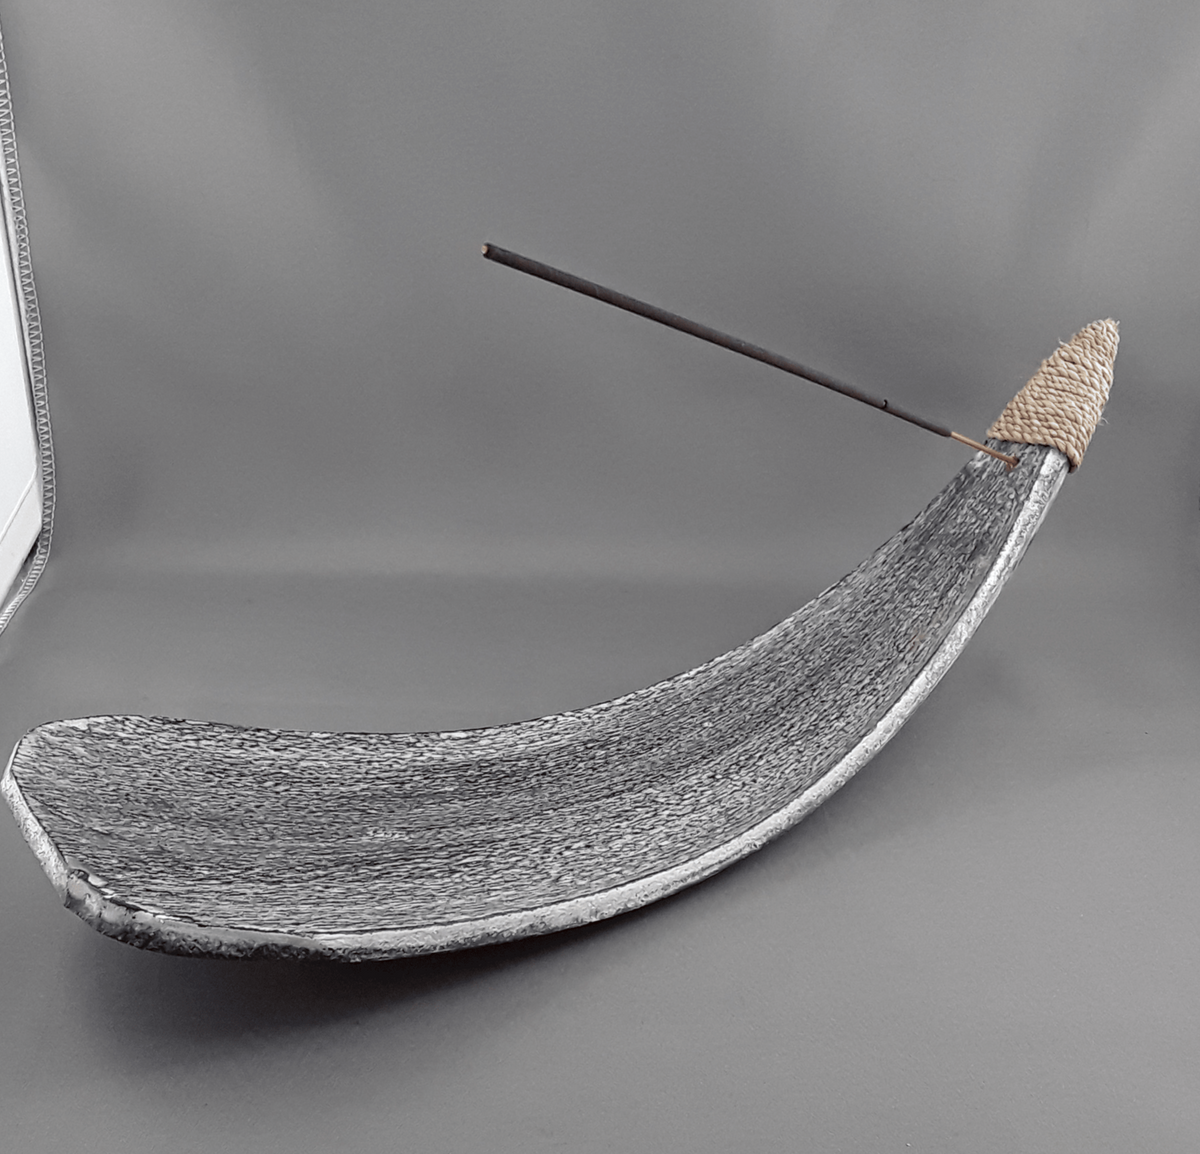 Banana leaf incense holder - Birdie’s Nest Inc 